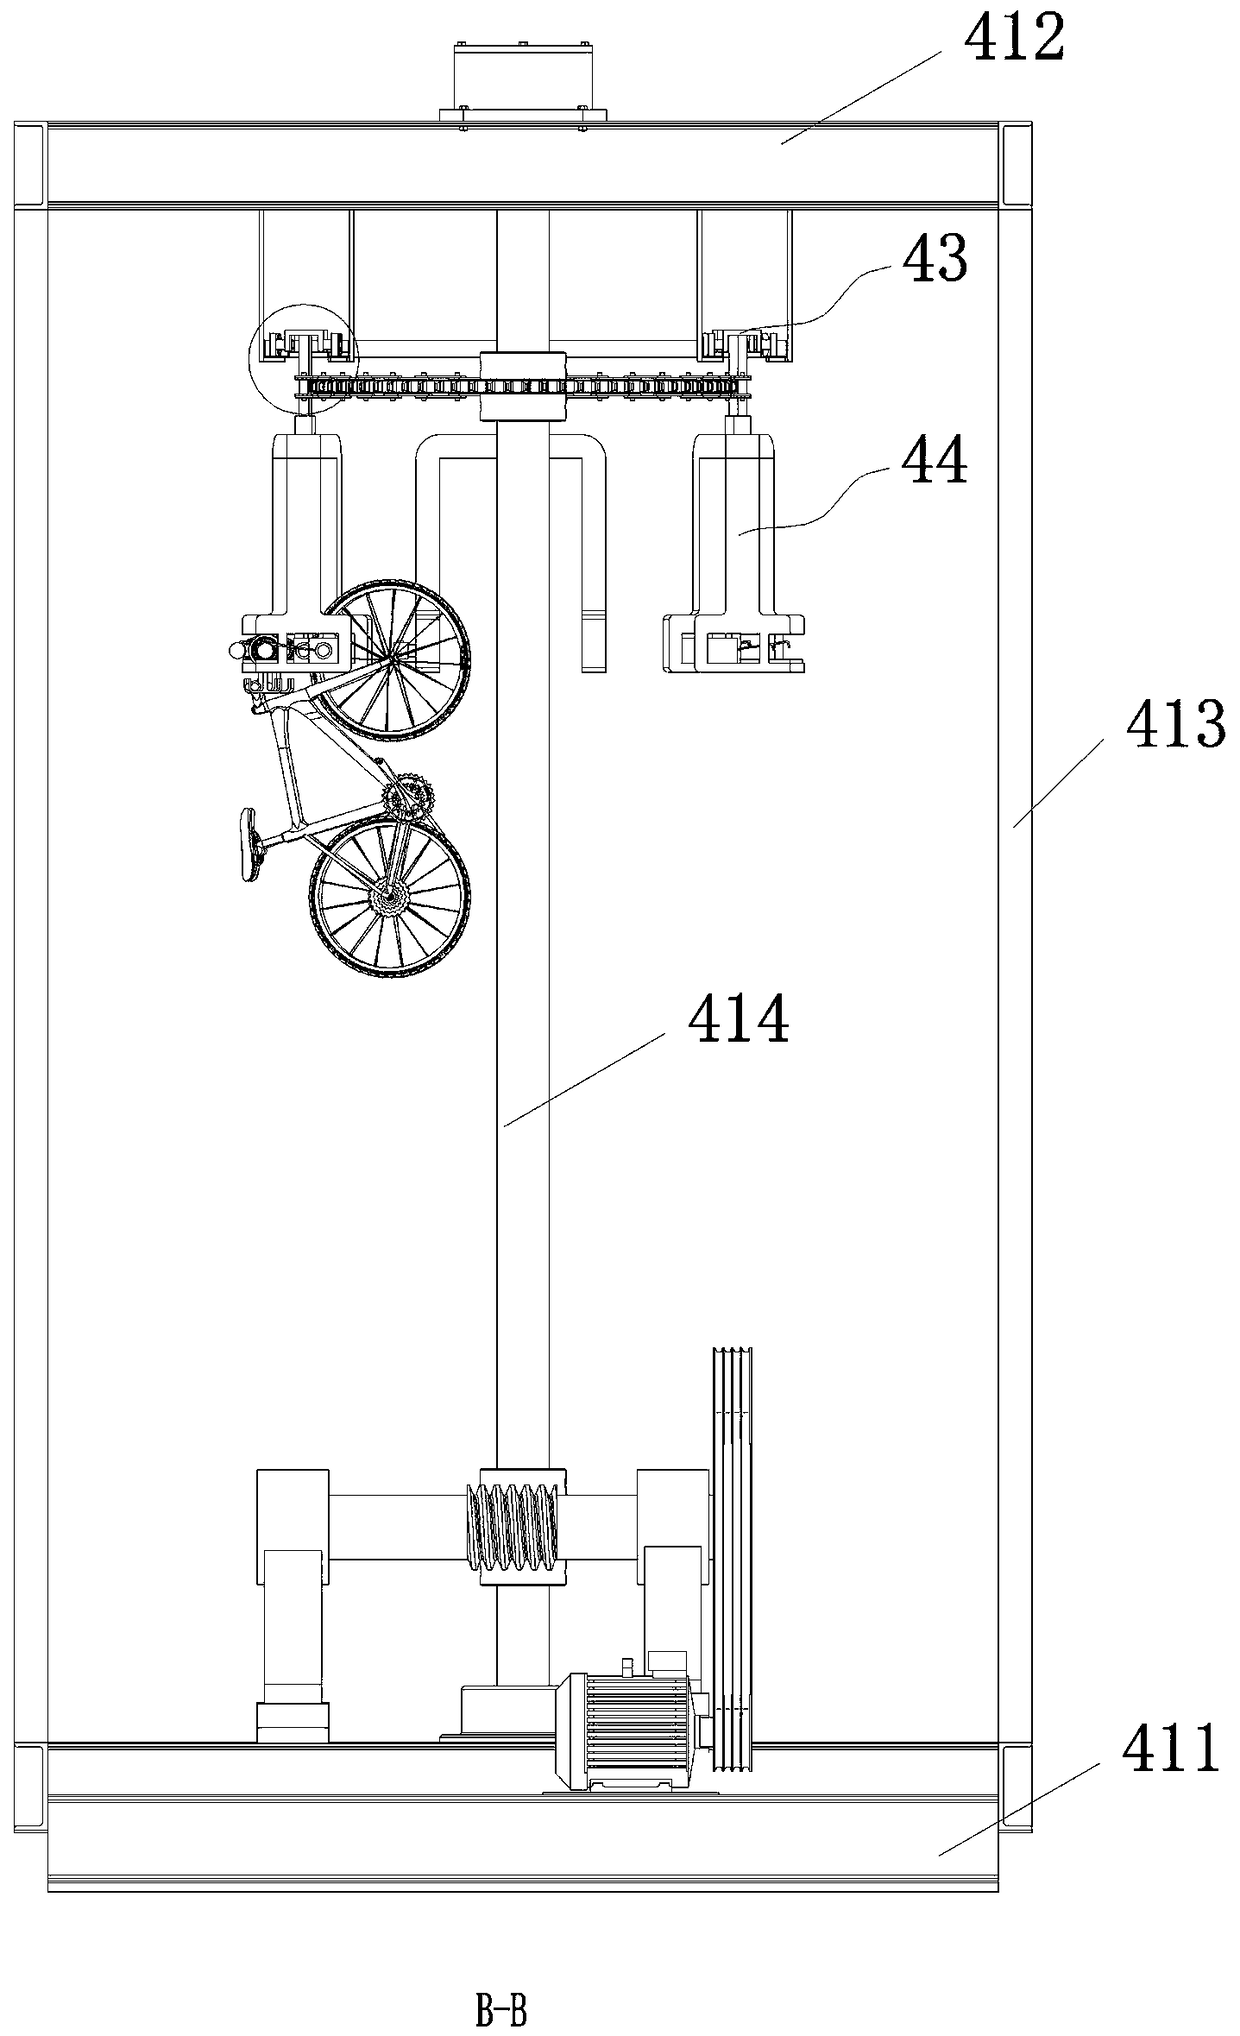 In-garage circulating storage device for bicycle garage